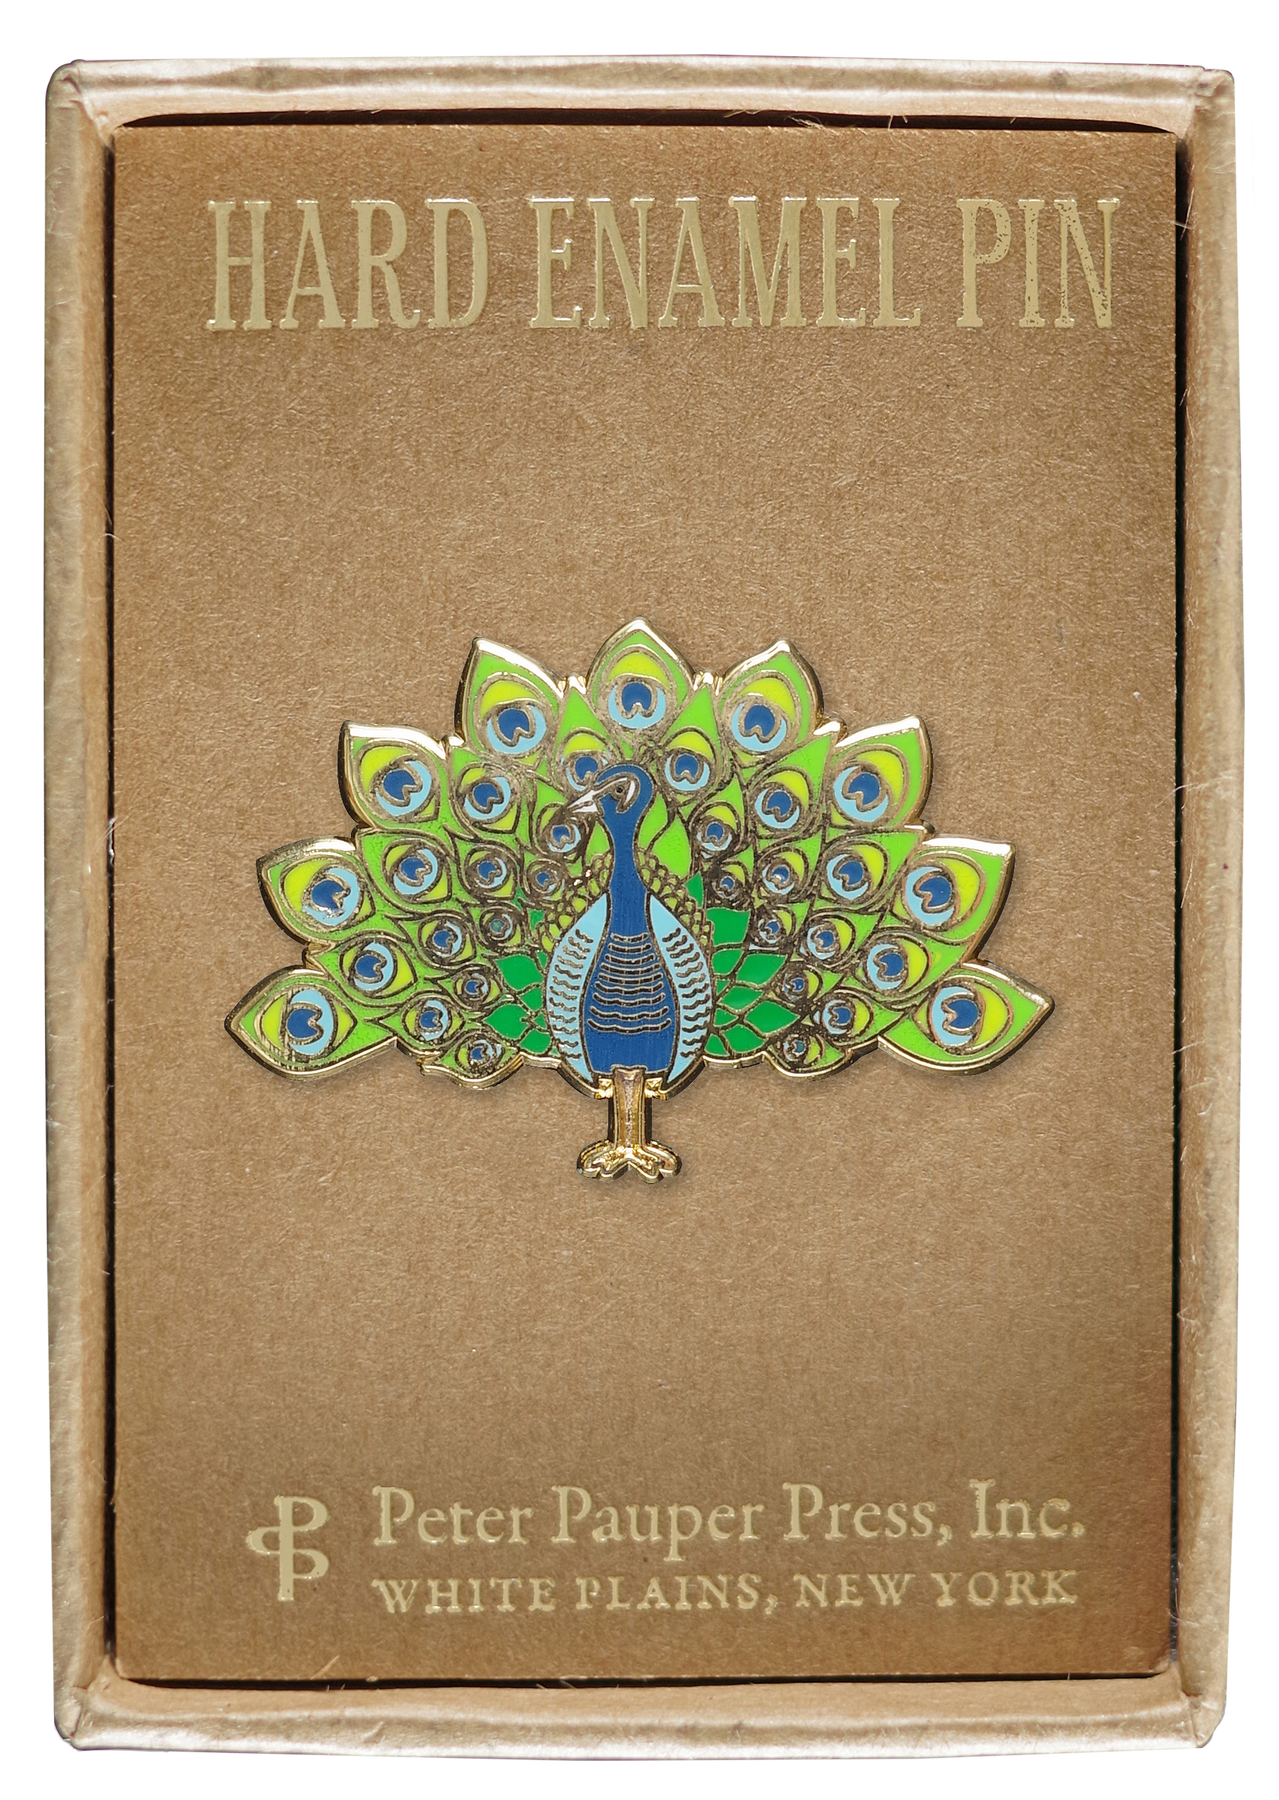 Peter Pauper Press Birds Sticker Set 340610 – Good's Store Online